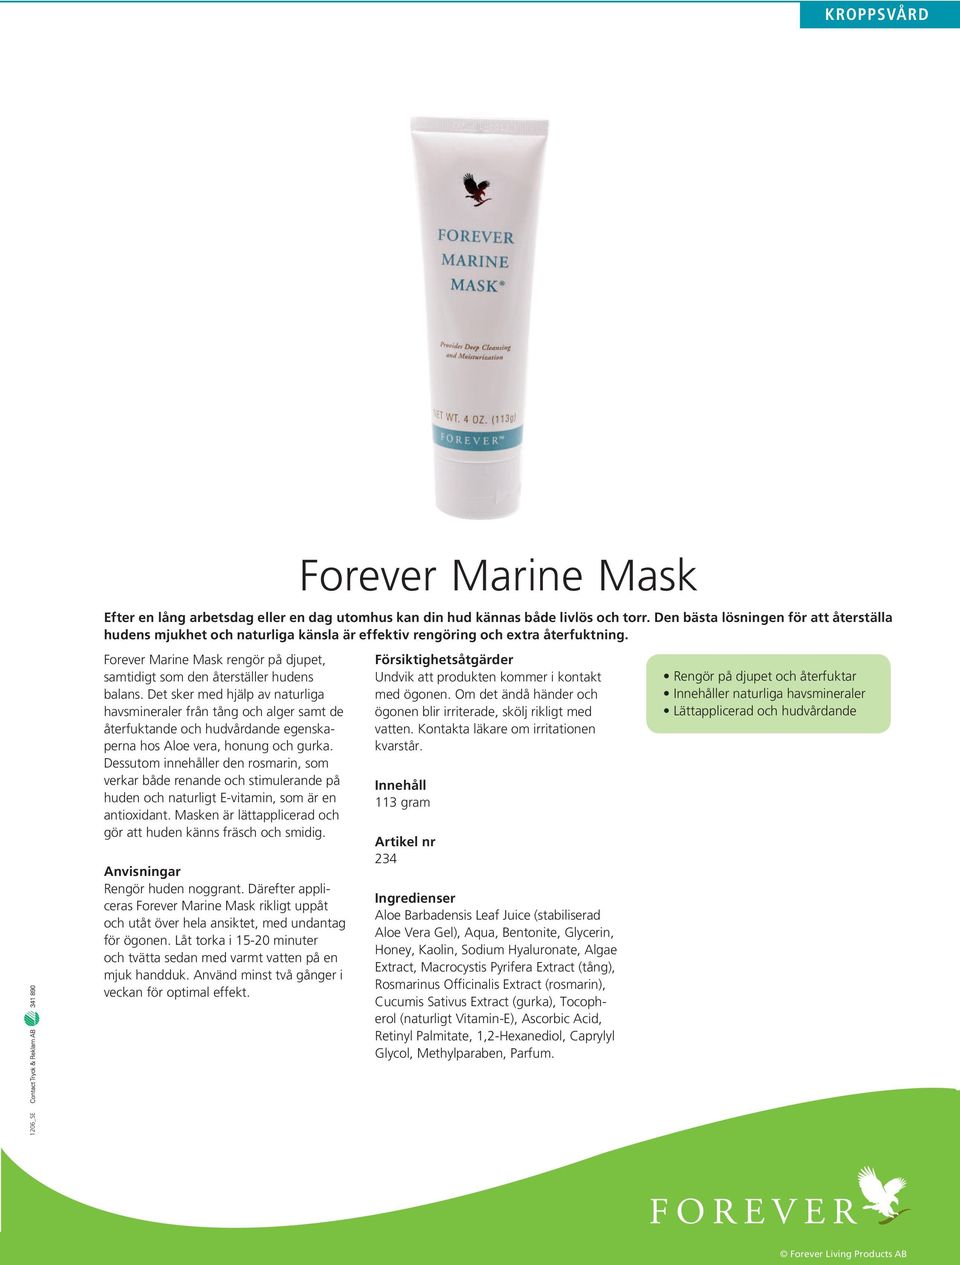 Forever Marine Mask rengör på djupet, samtidigt som den återställer hudens balans.